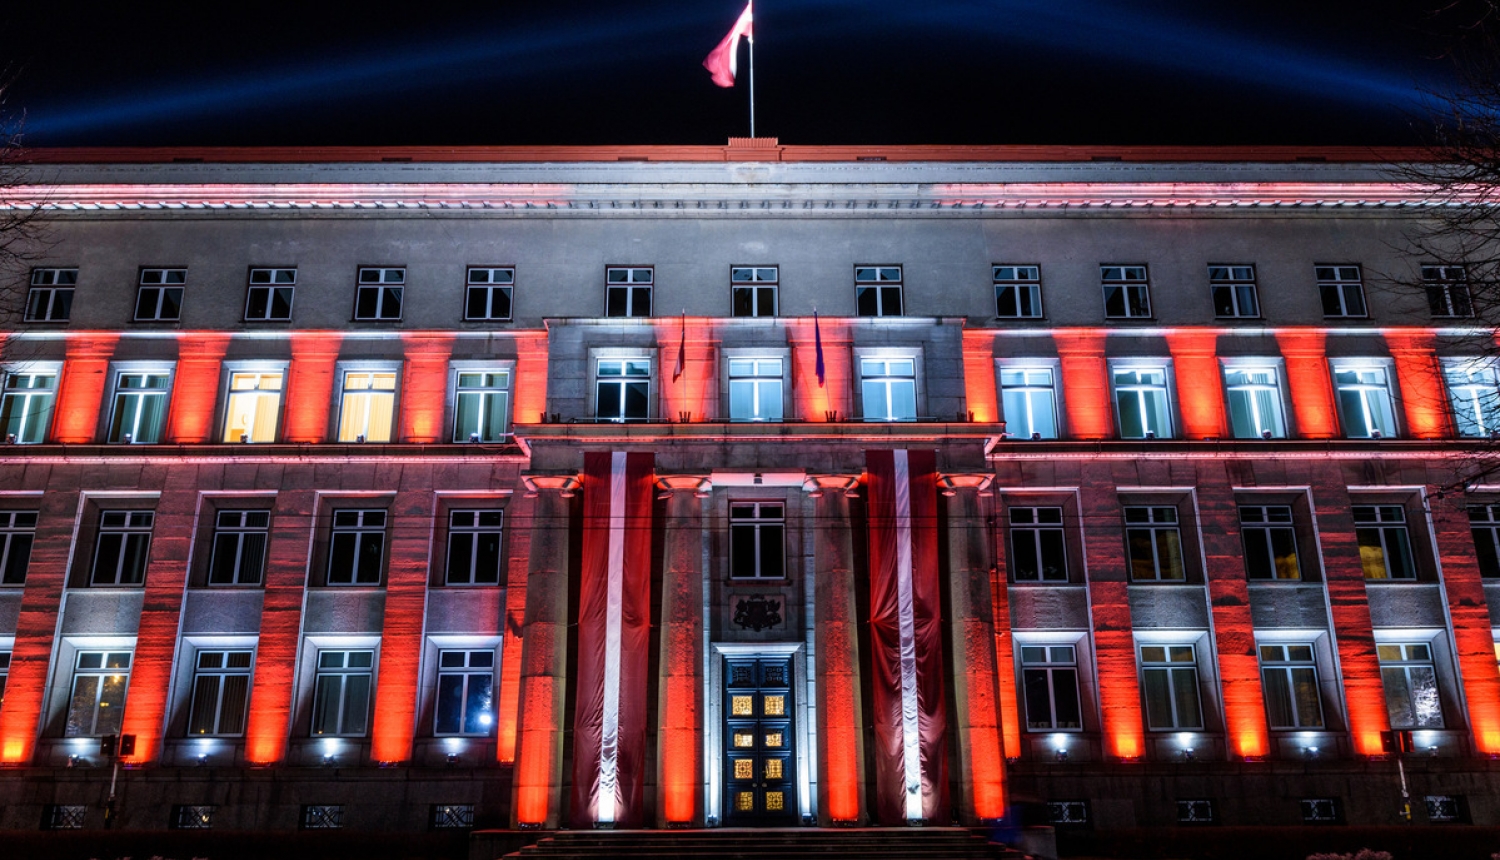 Valdības nama izgaismošanas projekts “Mosties!” aicinās iedzīvotājus novērtēt Latviju